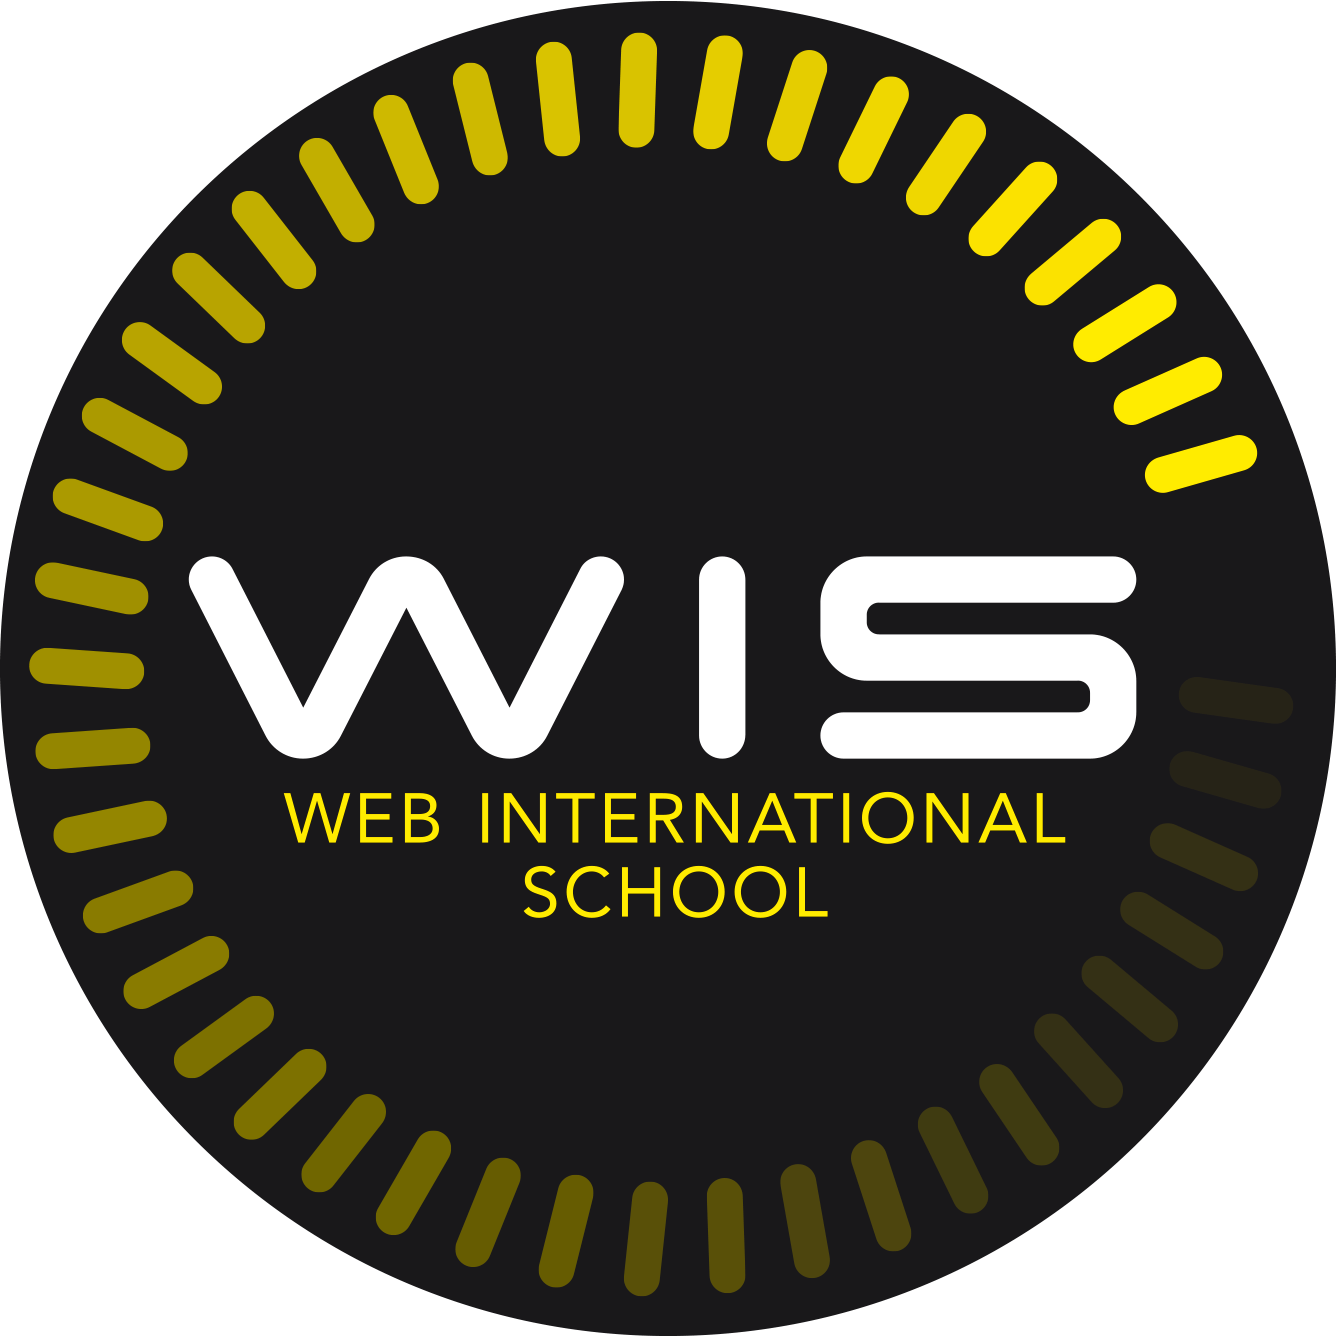 Wis Logo - WIS Web International School - Sponsor Web2day